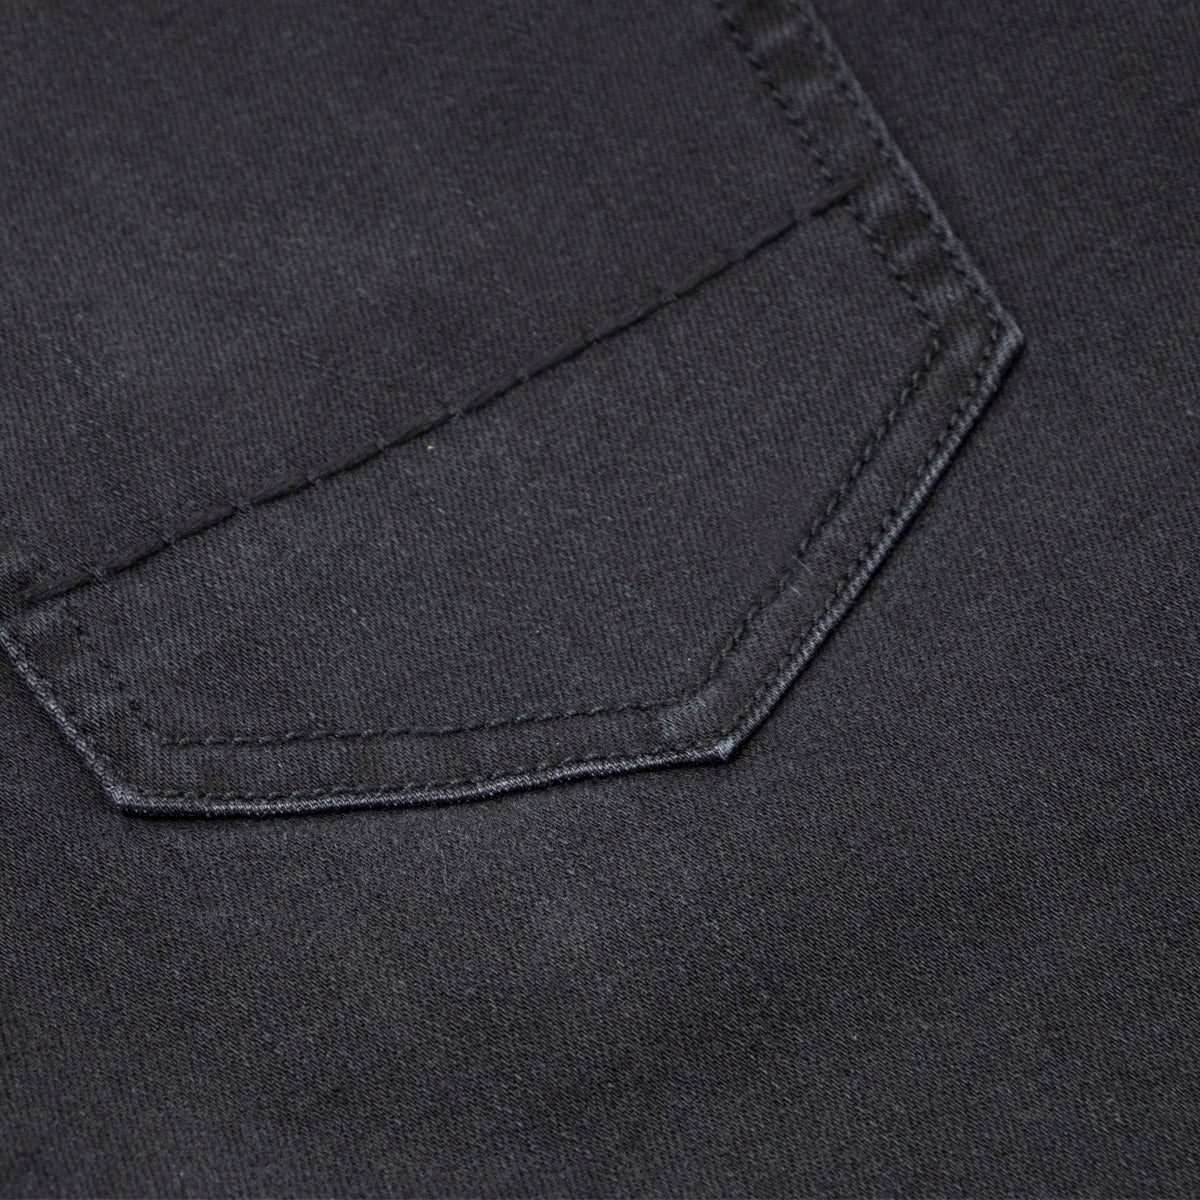 Washed Black Denim 'Tokyo' Slim Fit Jeans  Richard J Brown   